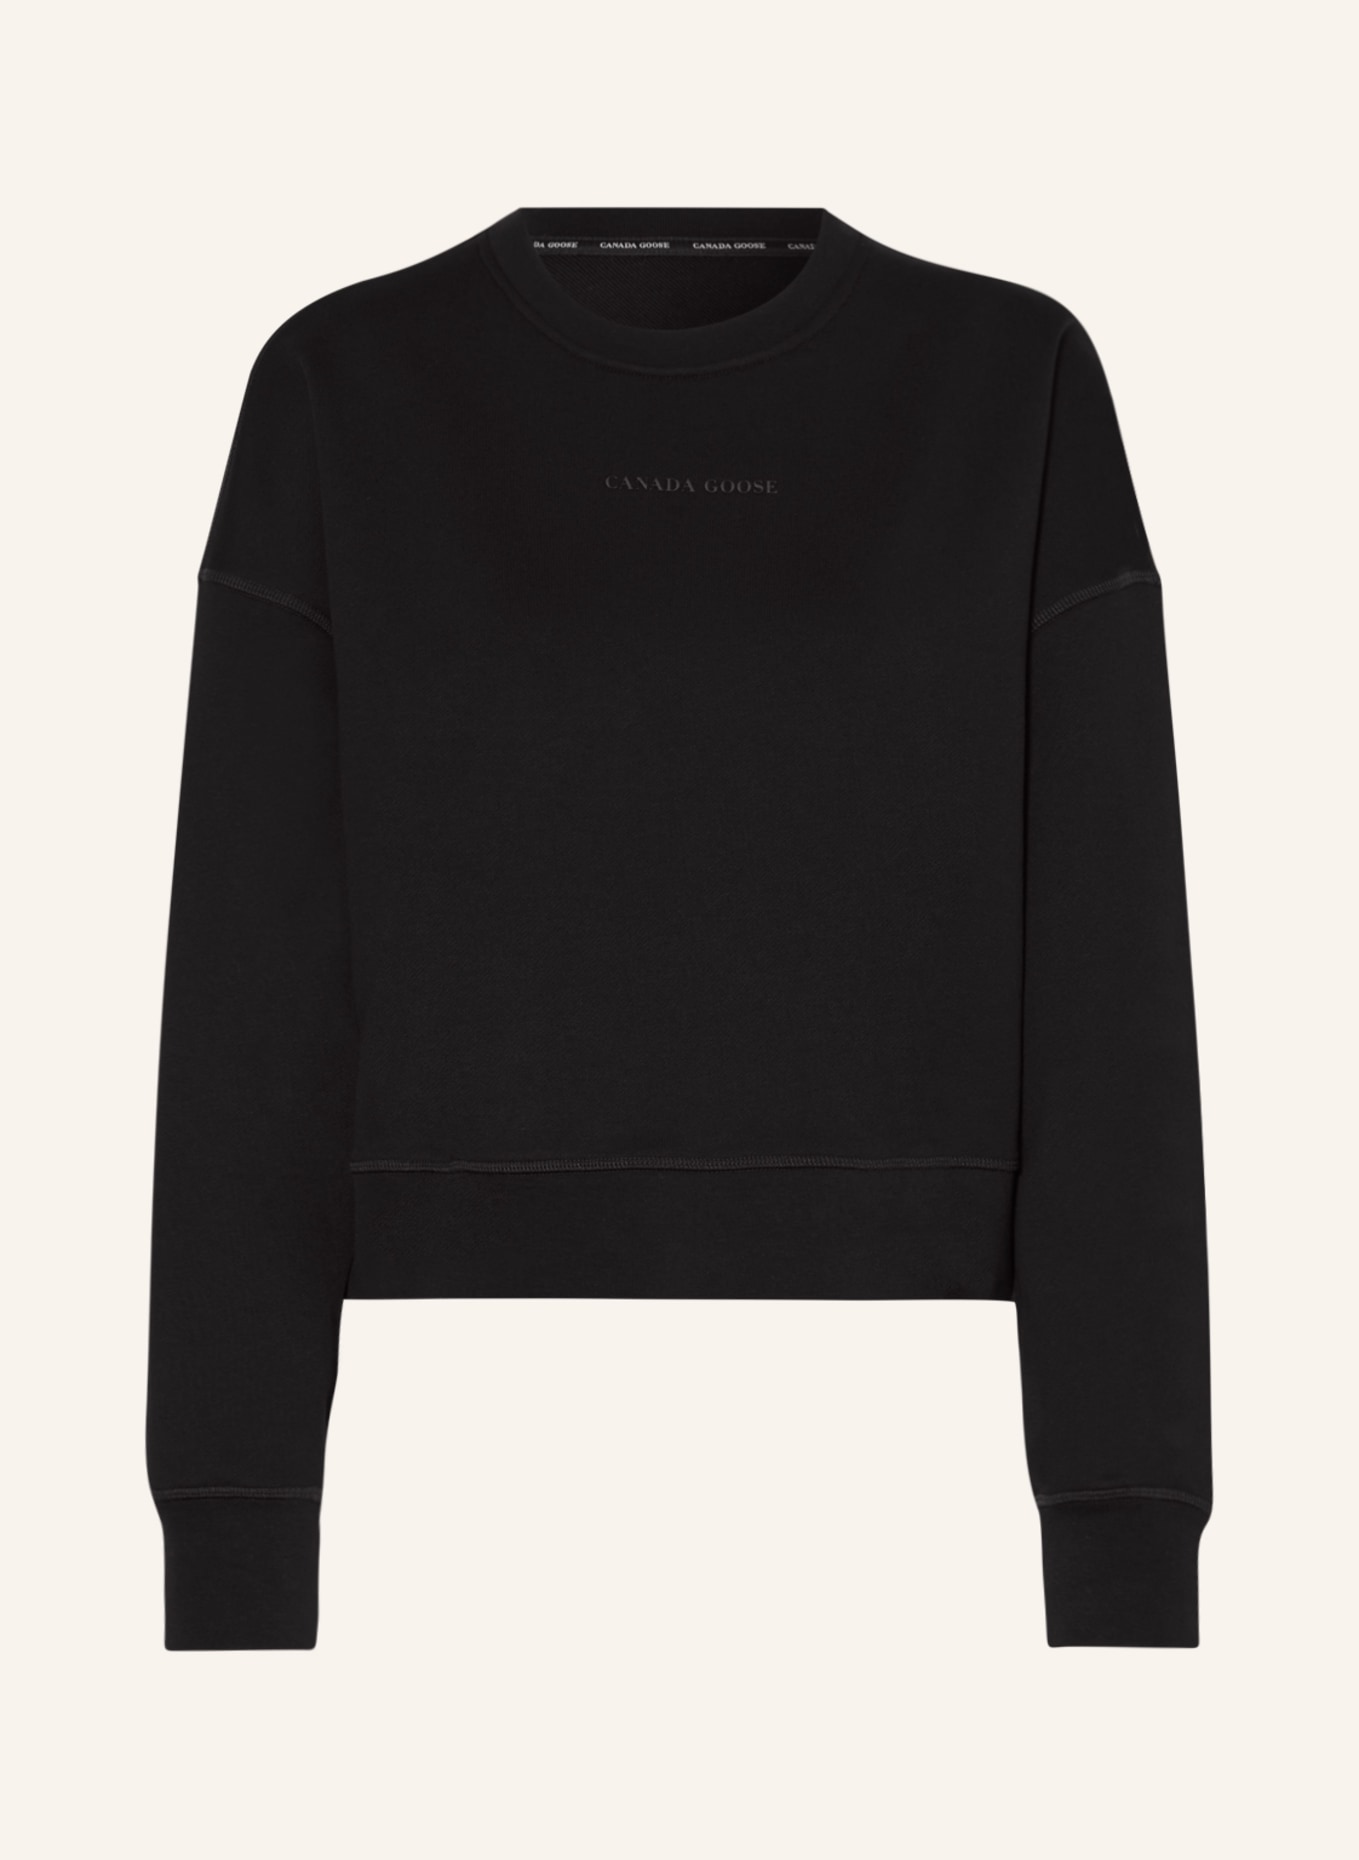 CANADA GOOSE Sweatshirt MUSKOKA, Color: BLACK (Image 1)